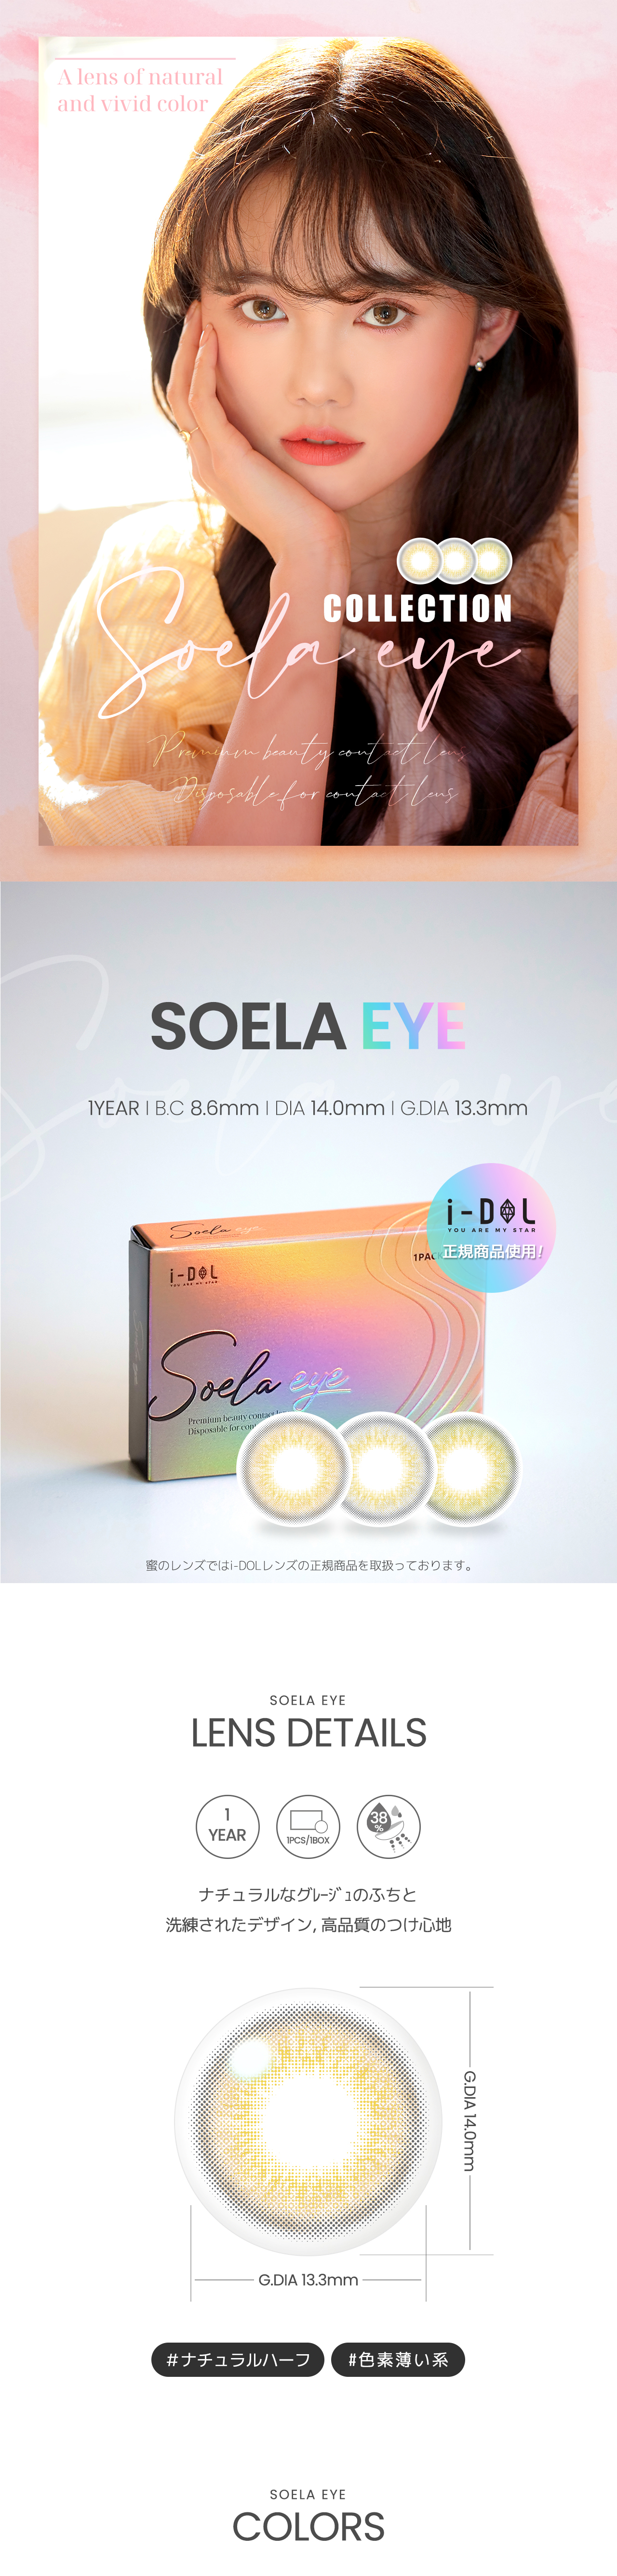 seora eye